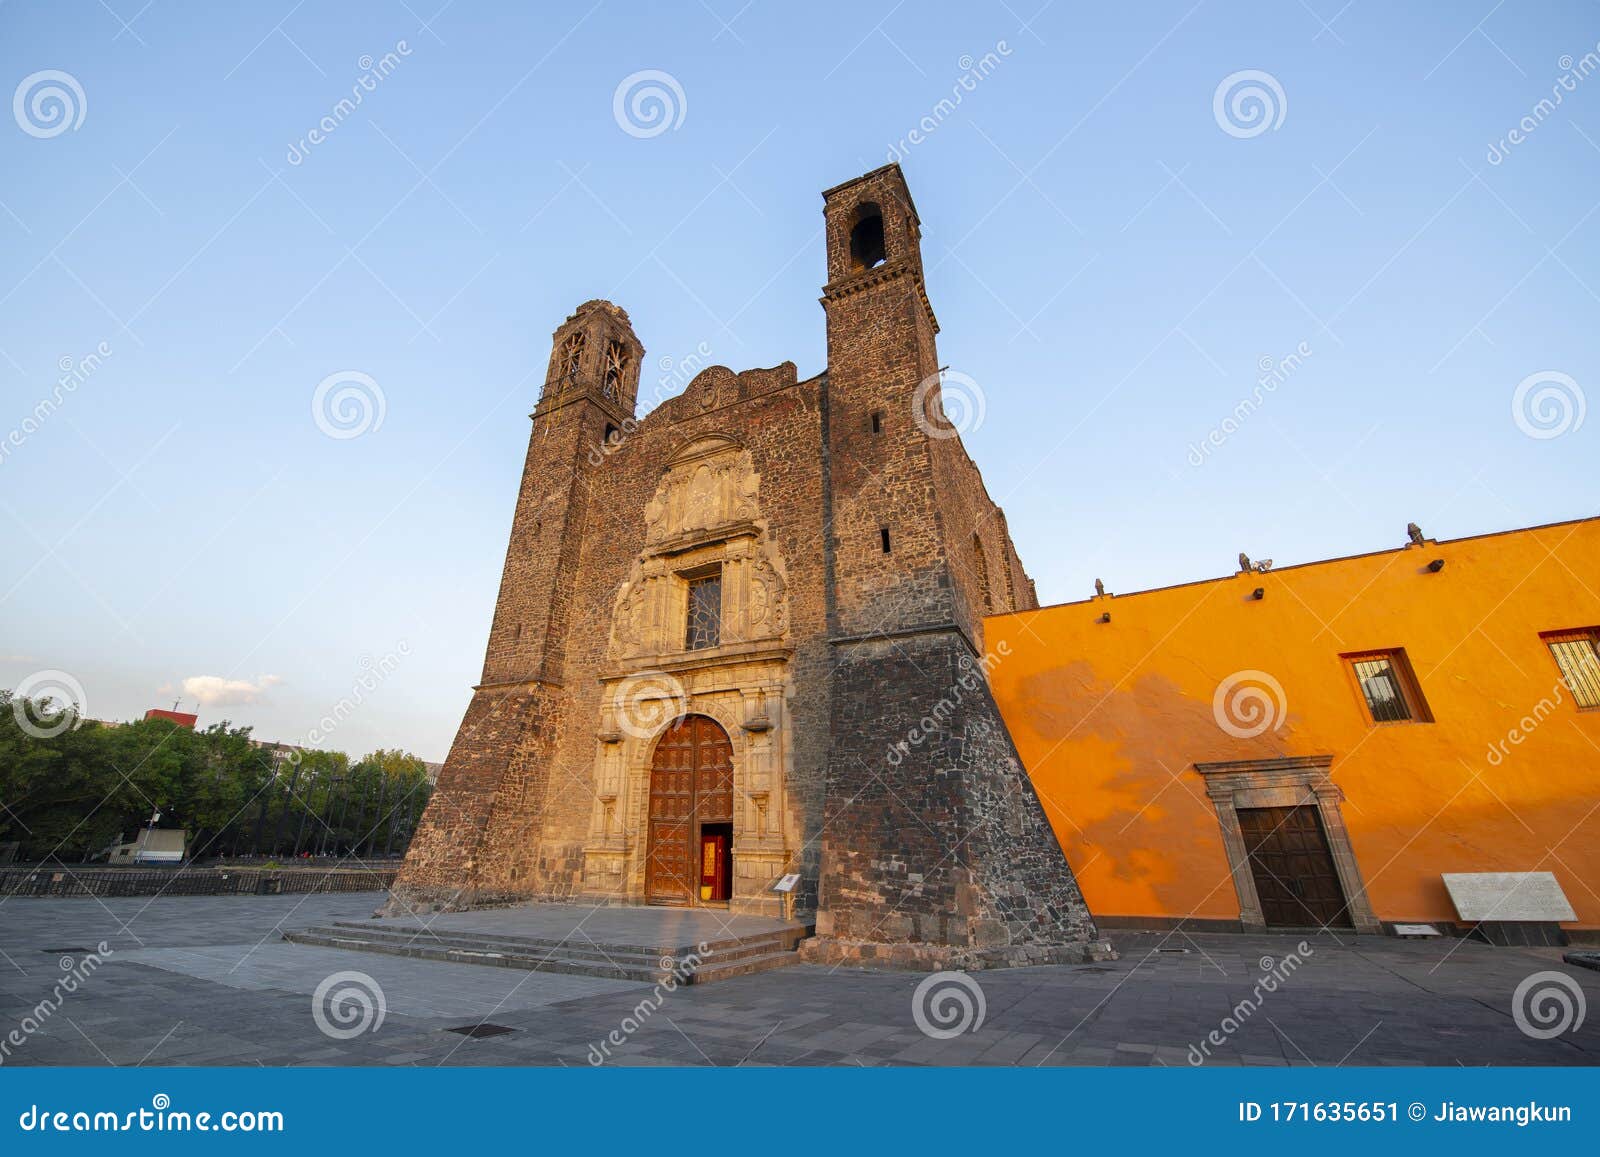 templo de santiago and tlatelolco ruin at mexico city, mexico